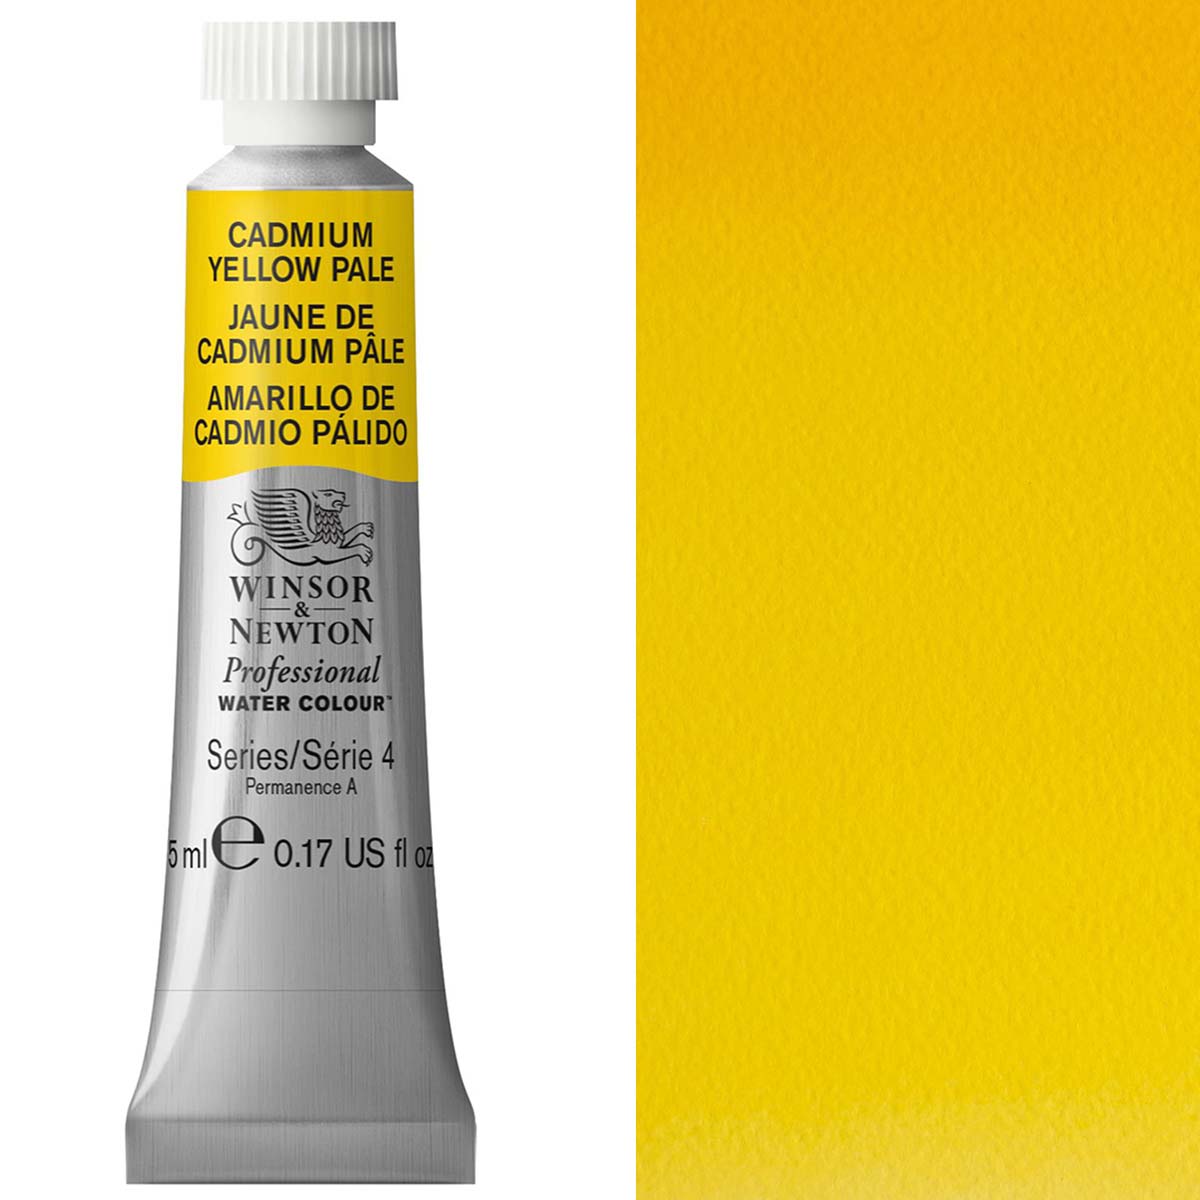 Winsor und Newton - Aquarell der professionellen Künstler - 5 ml - Cadmium gelb blass